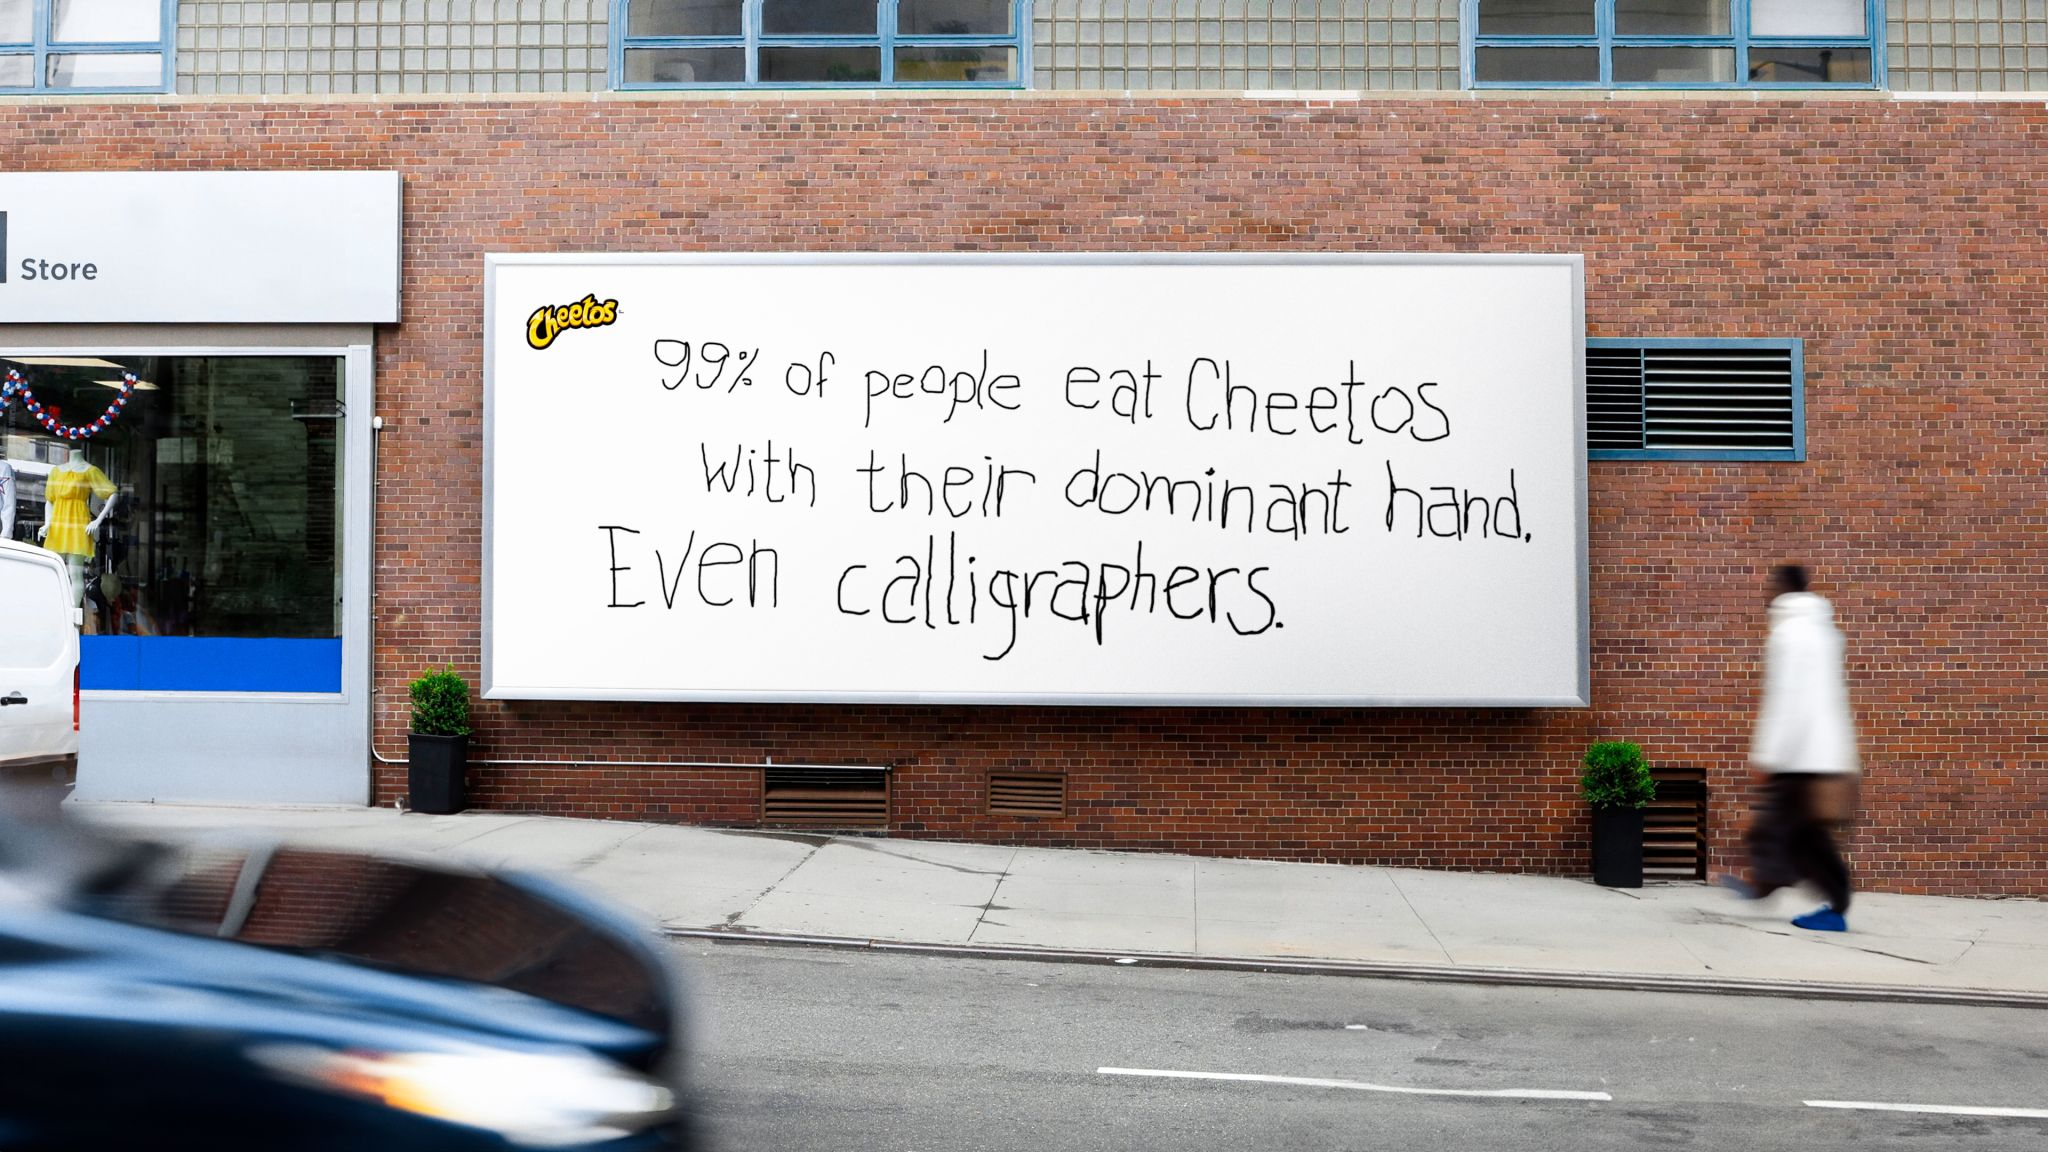 Cheetos-99-Other-Hand-1-1713374083.jpeg